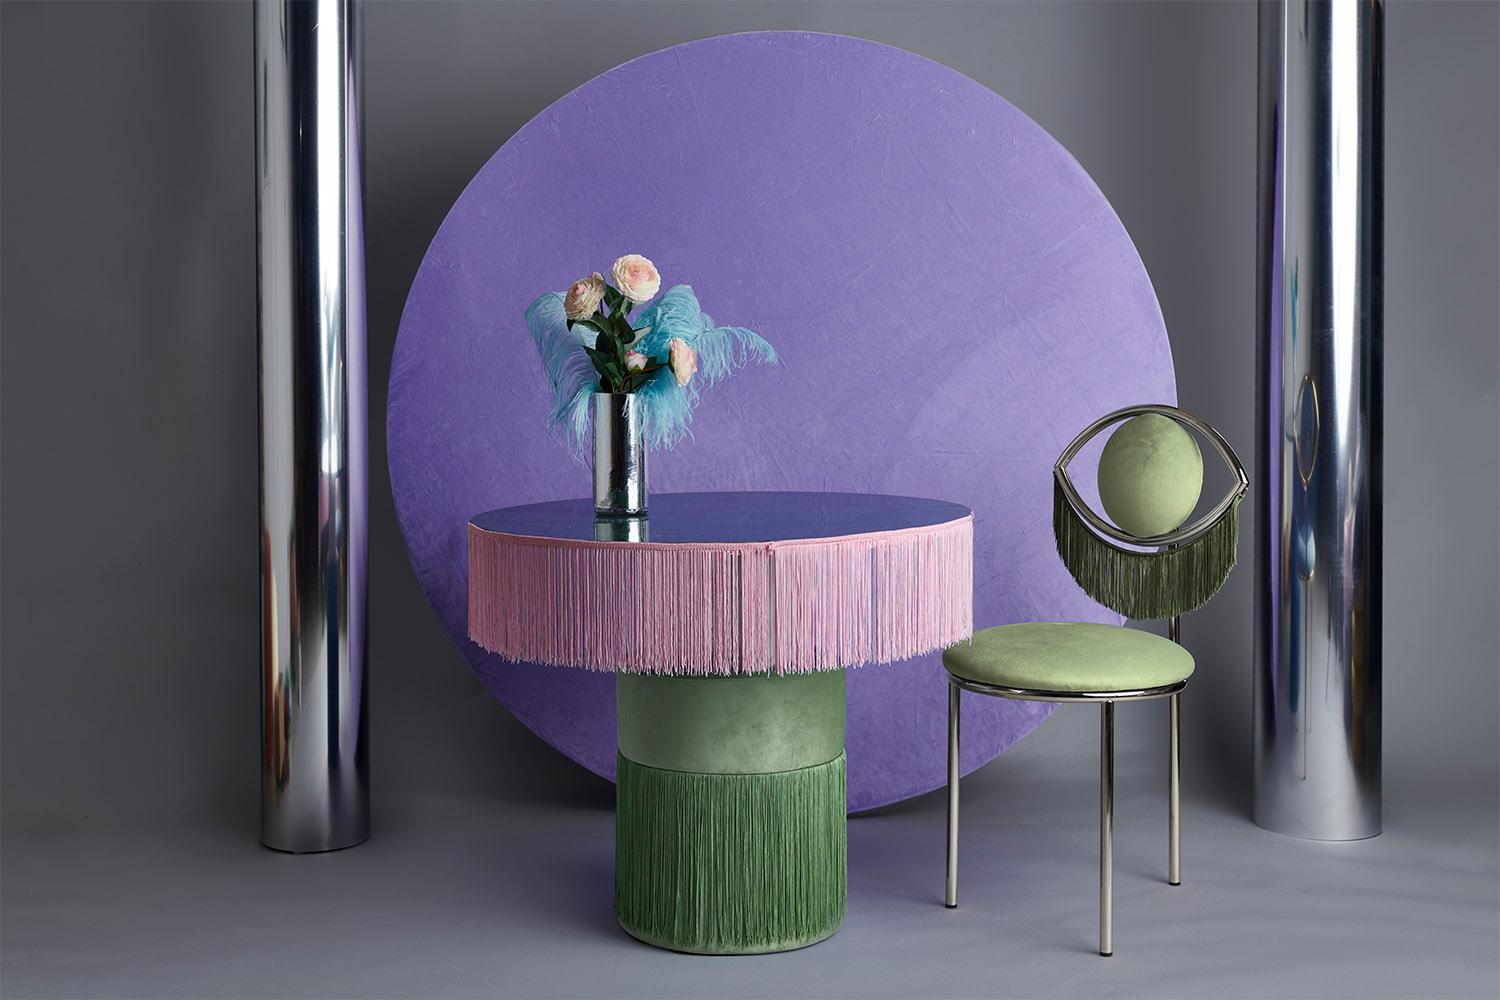 Contemporary Wink Chair by Masquespacio